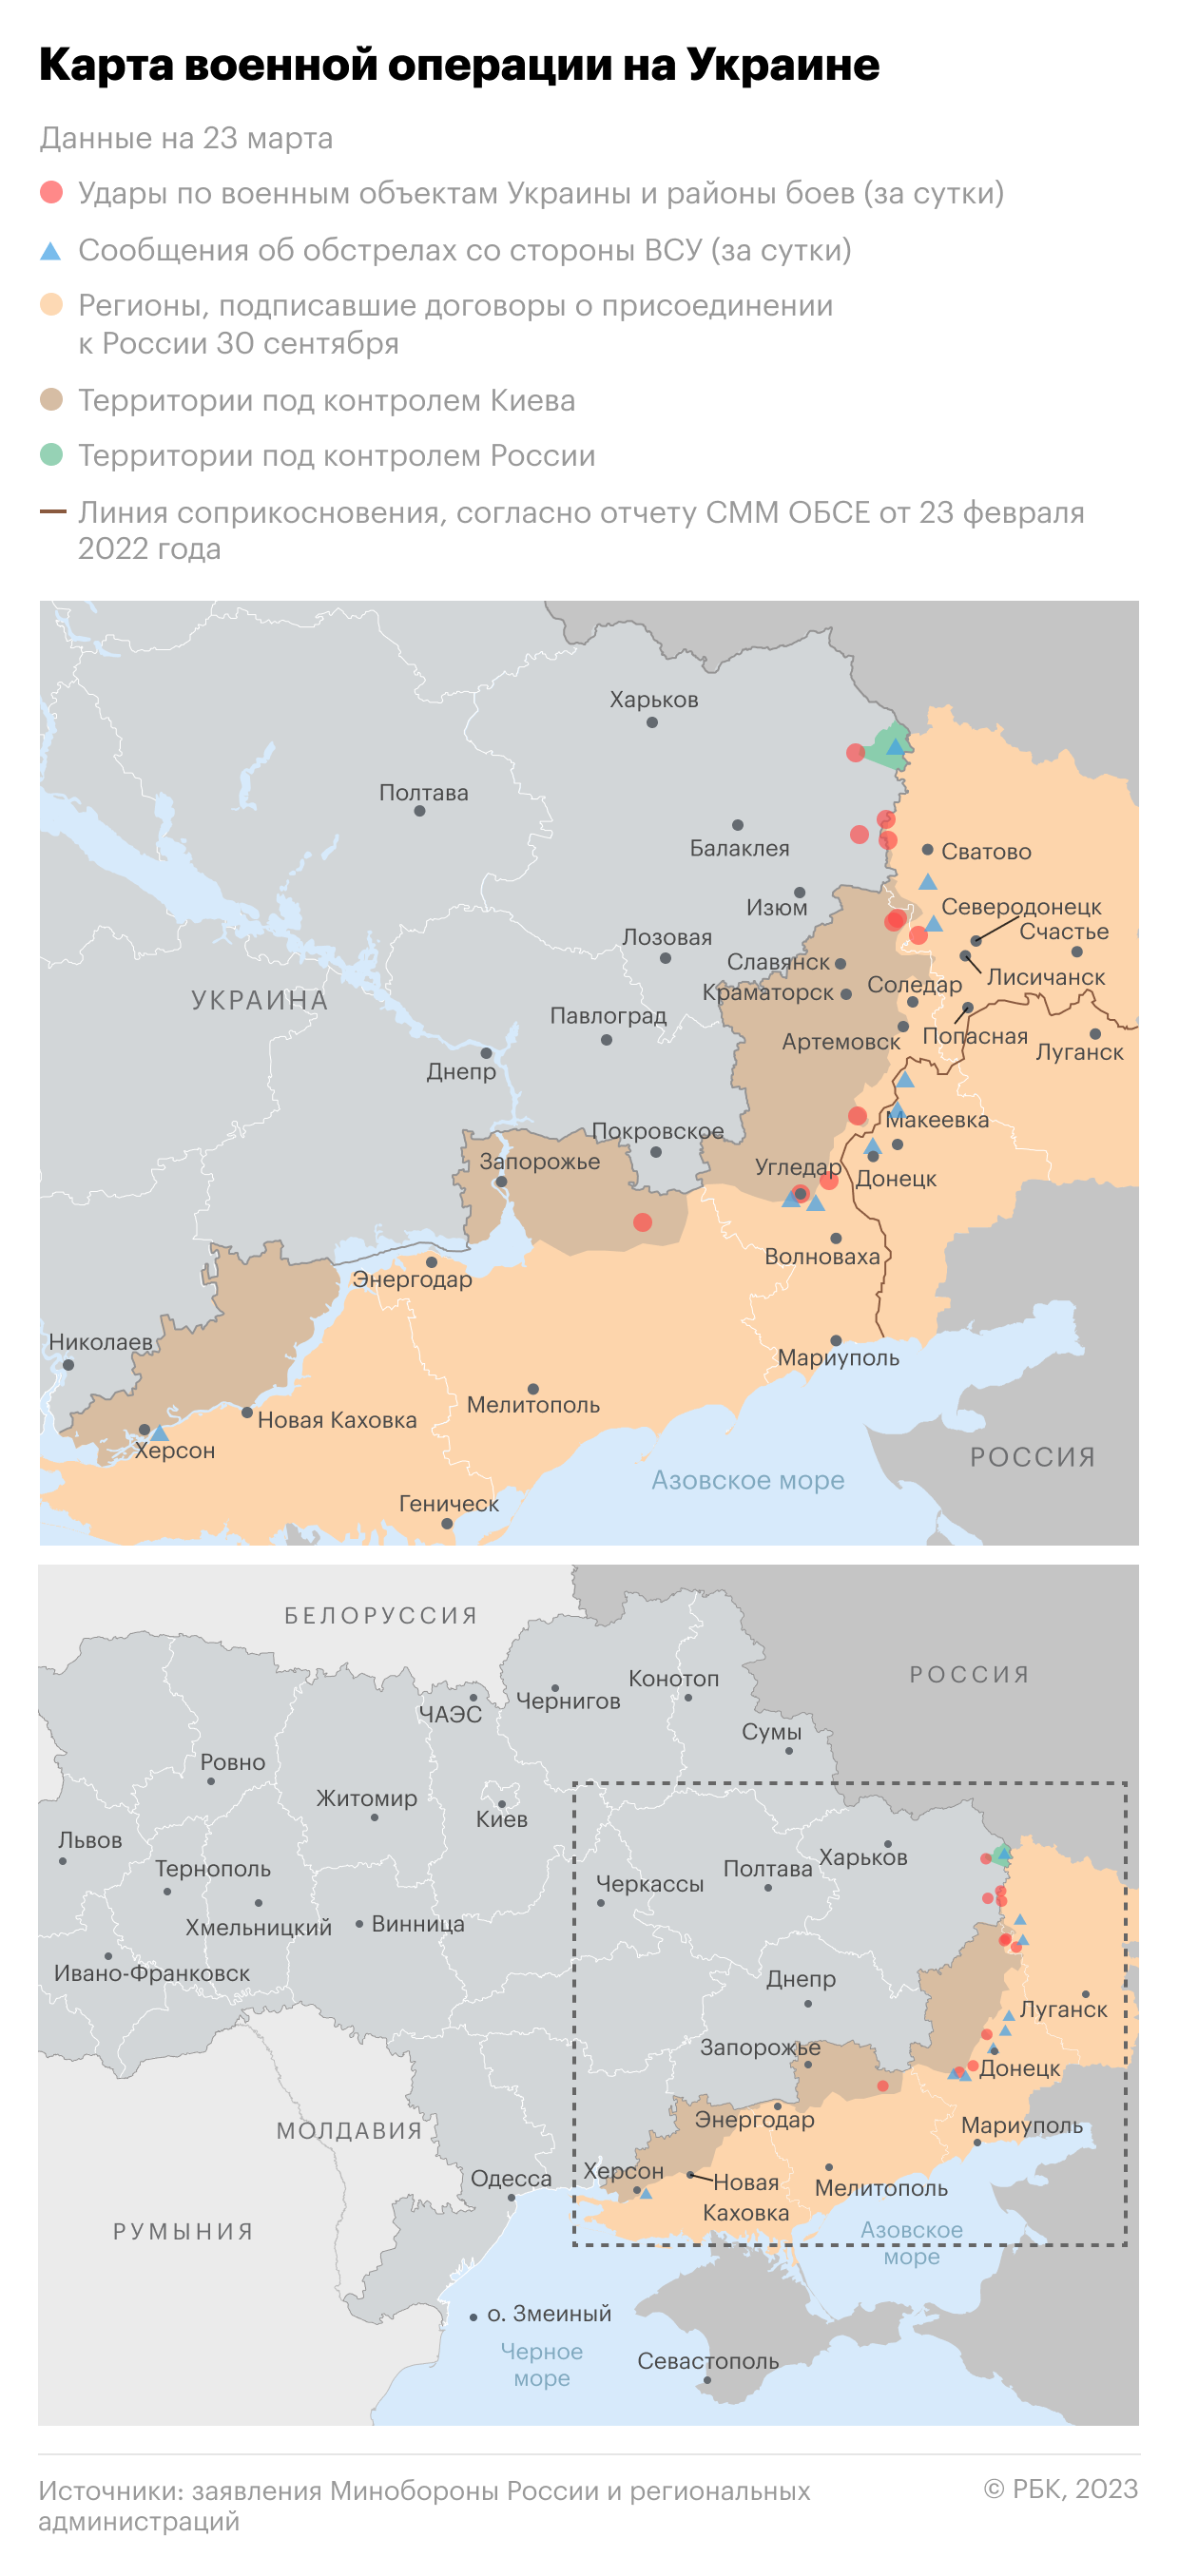 Во всех областях Украины второй раз за день объявили воздушную тревогу